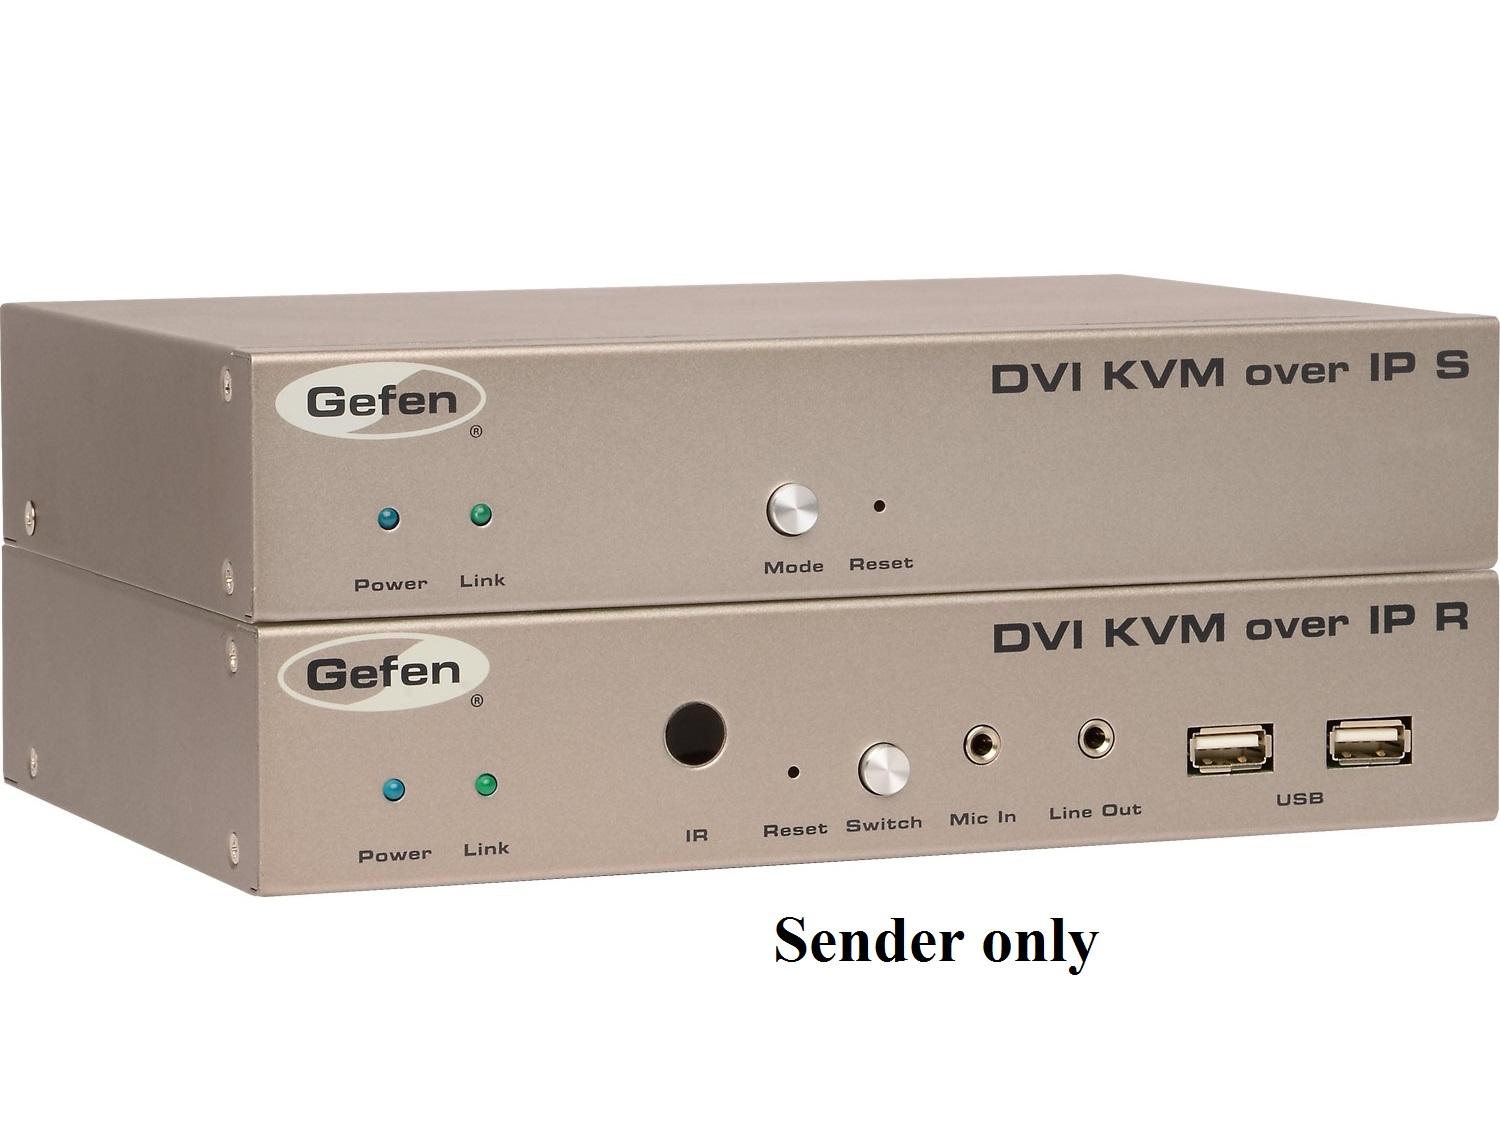 Gefen EXT-DVIKVM-LANTX DVI KVM over IP Extender (Transmitter)